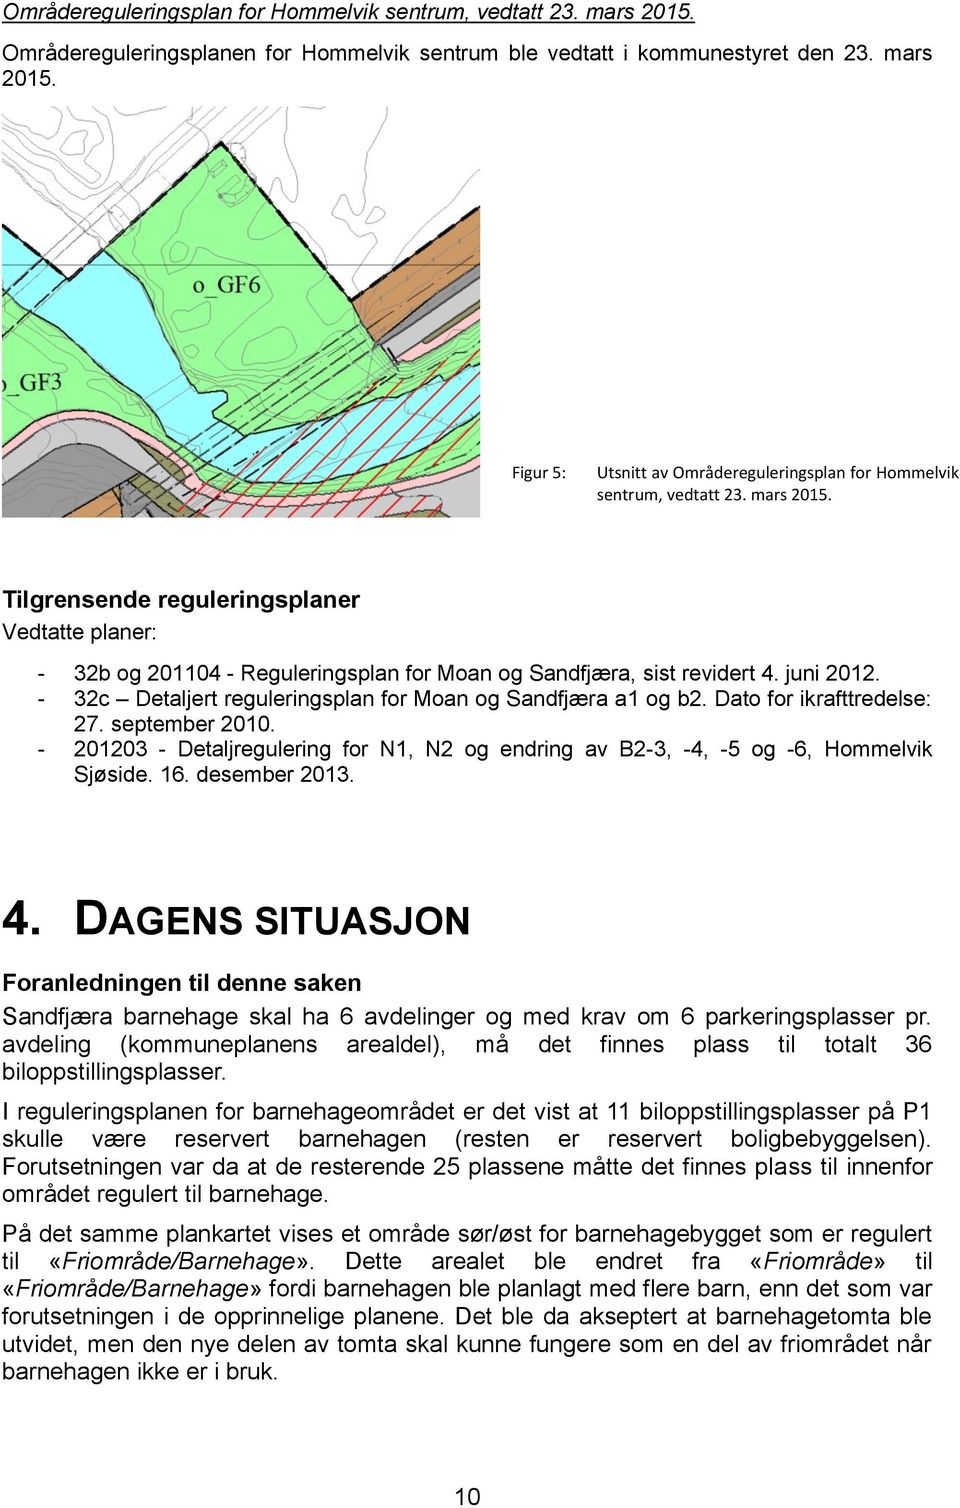 - 32c Detaljert reguleringsplan for Moan og Sandfjæra a1 og b2. Dato for ikrafttredelse: 27. september 2010. - 201203 - Detaljregulering for N1, N2 og endring av B2-3, -4, -5 og -6, Hommelvik Sjøside.